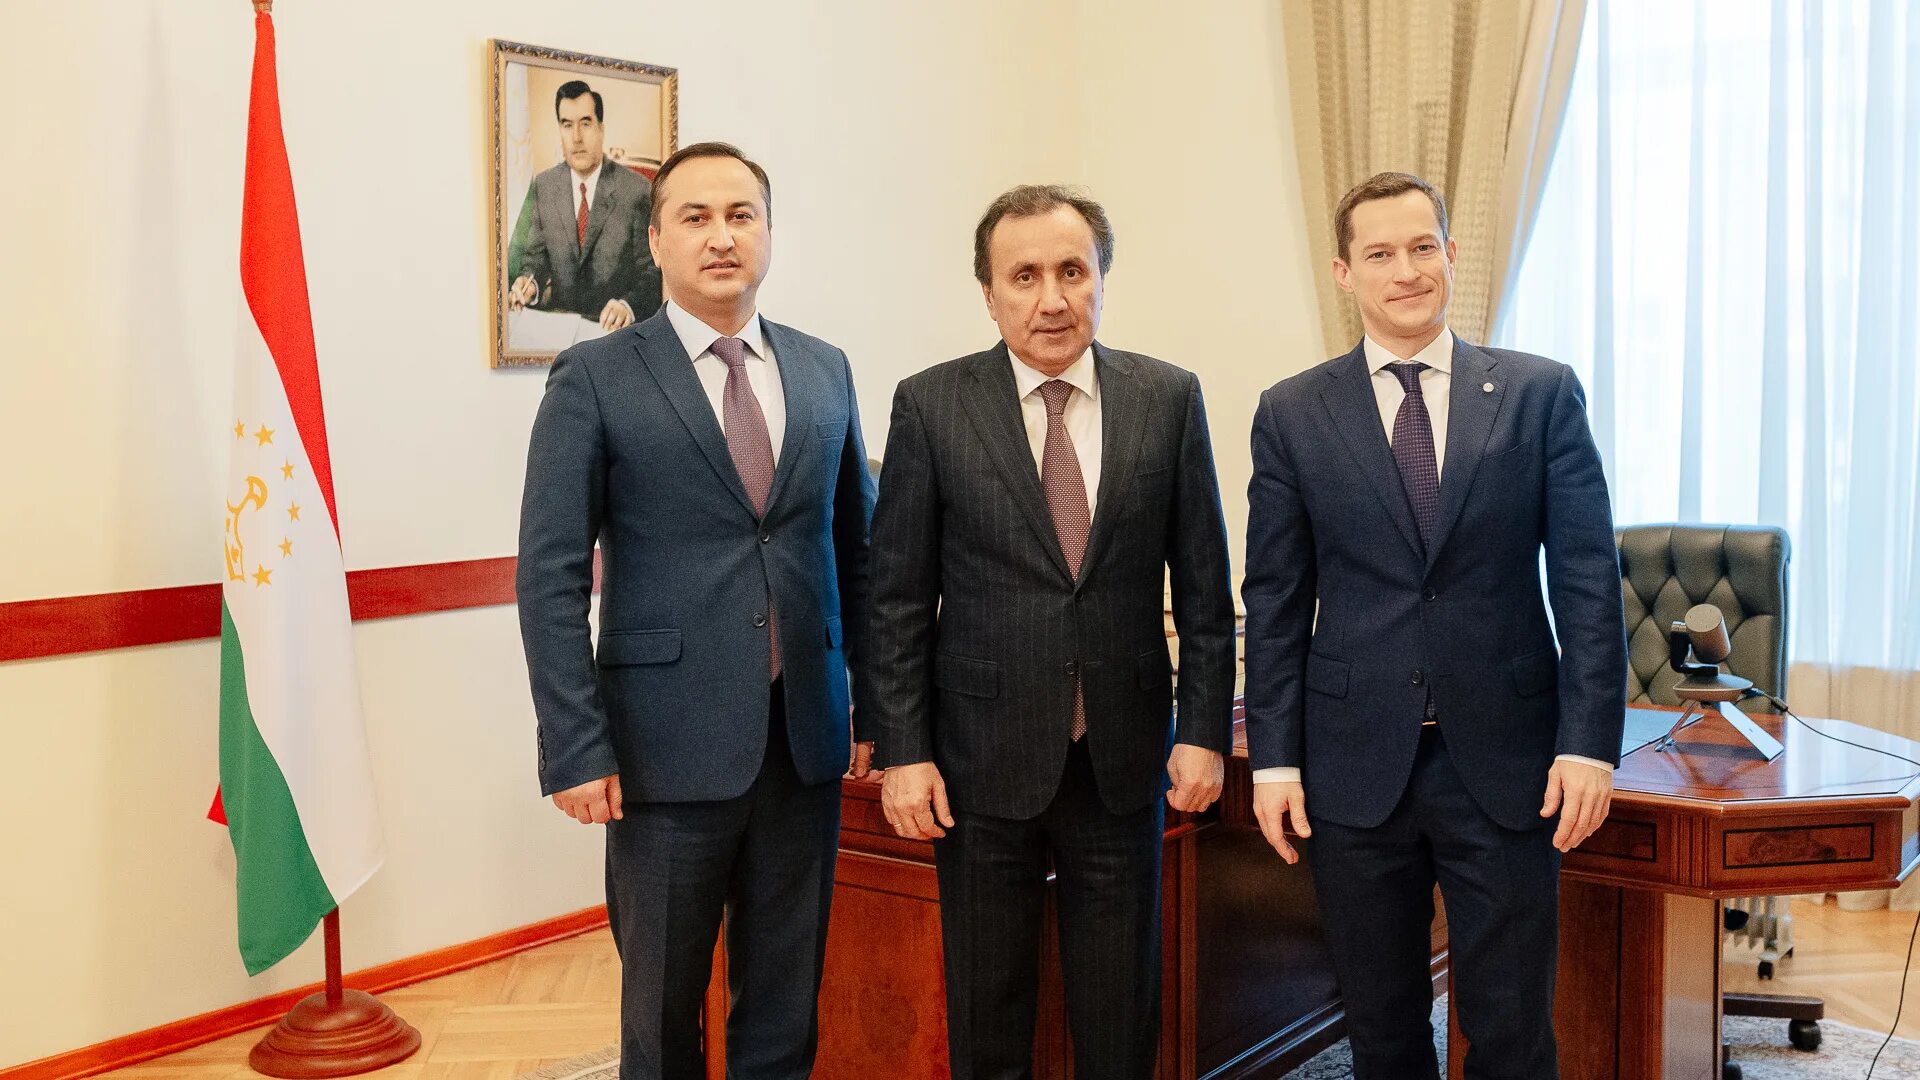 Консул Таджикистана в Москве. Посольство Республики Таджикистан в Москве. Посол Республики Таджикистан в России.